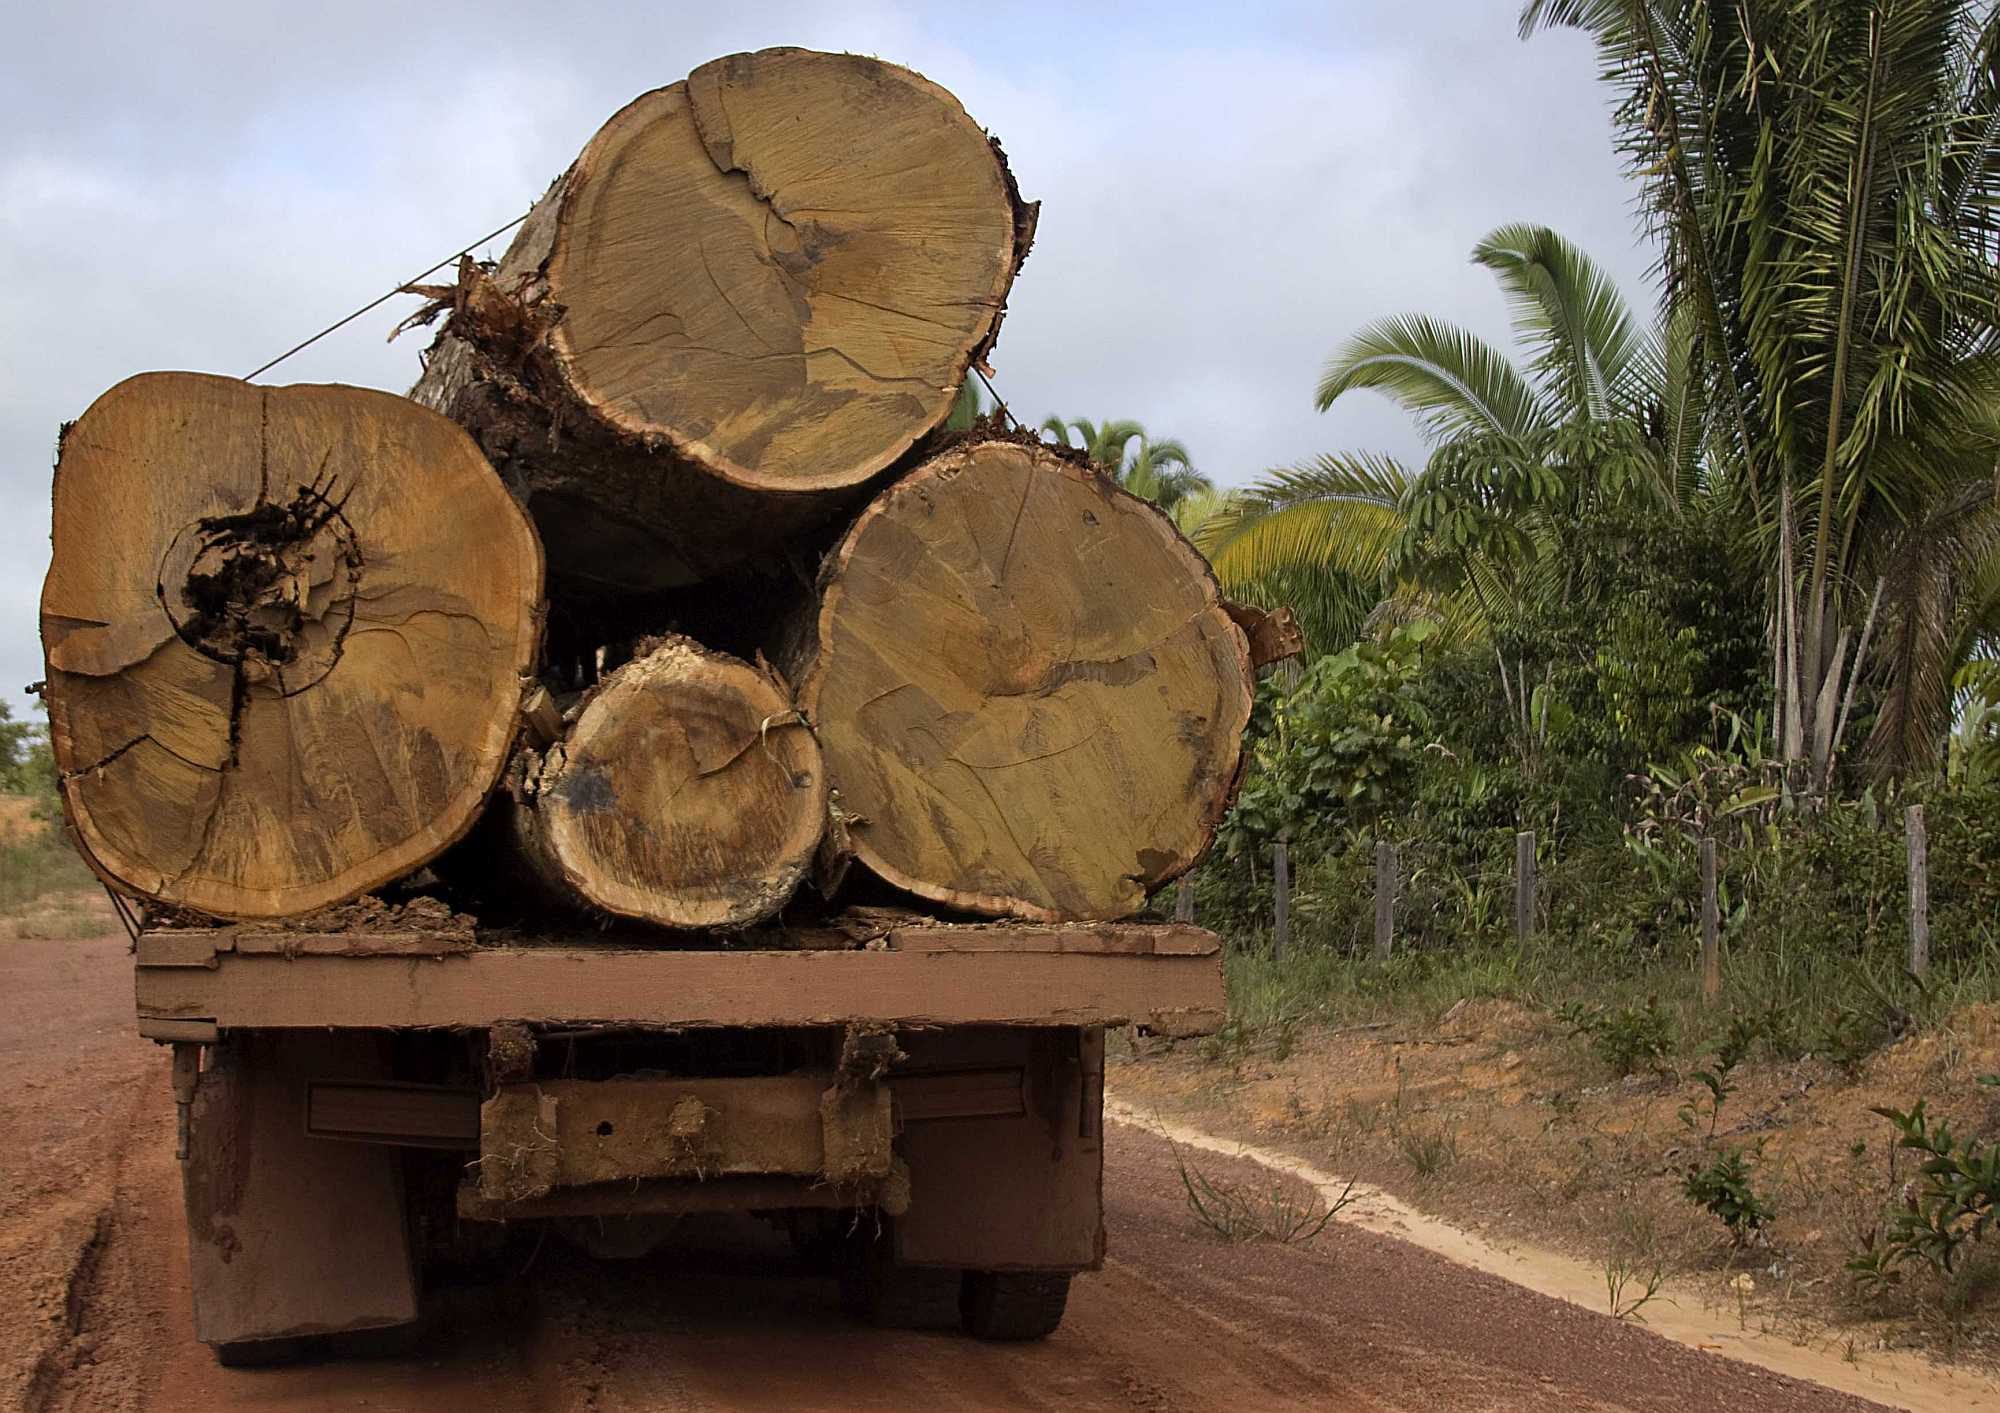 Tree trunks loaded on a truck in the Brazilian Amazon